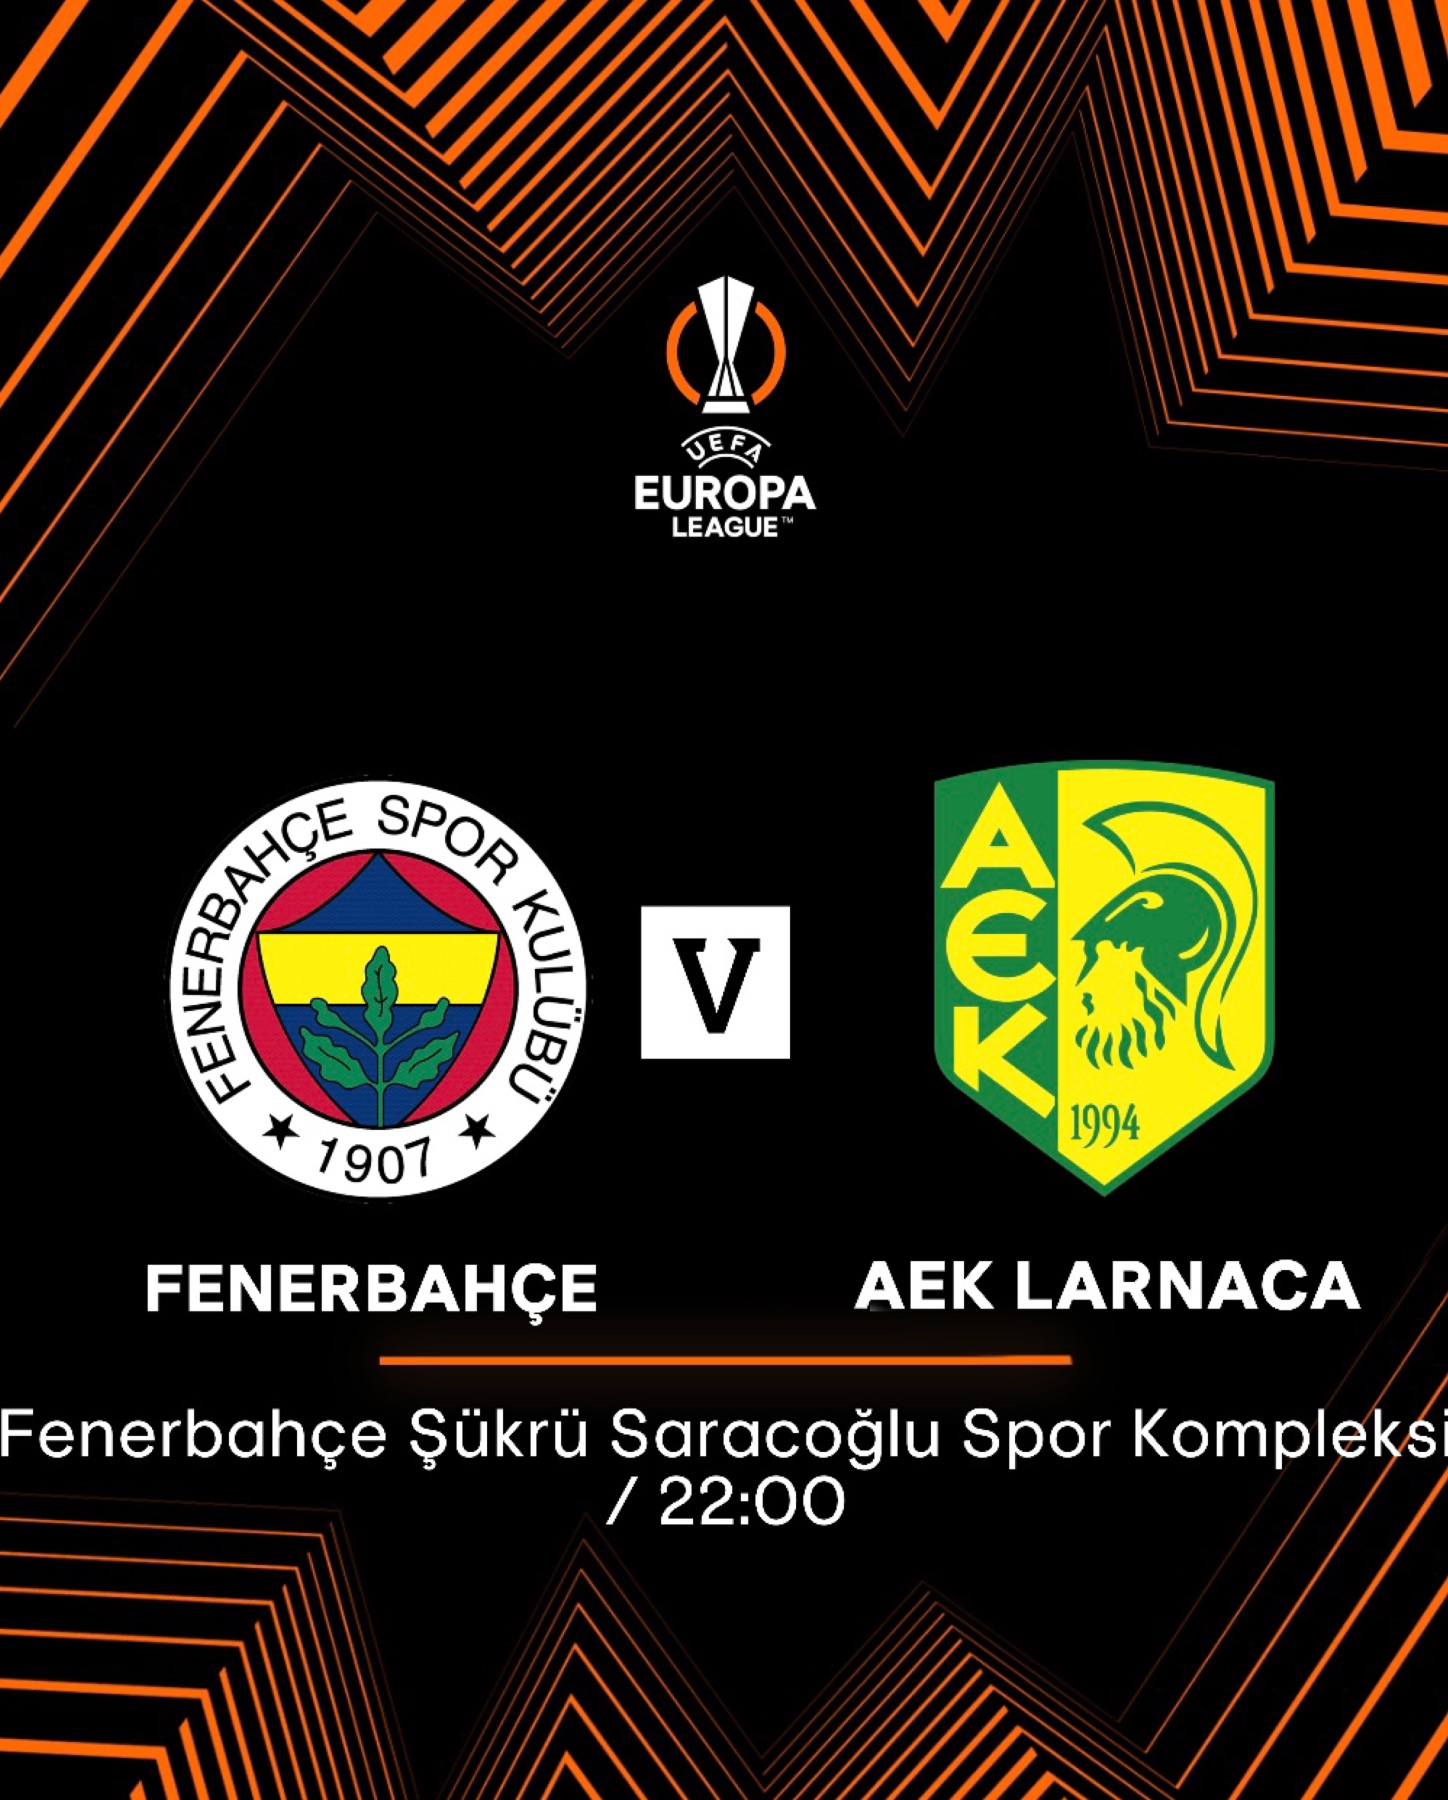 Nέα ανακοίνωση για τα εισιτήρια του αγώνα με την Fenerbahce SK 